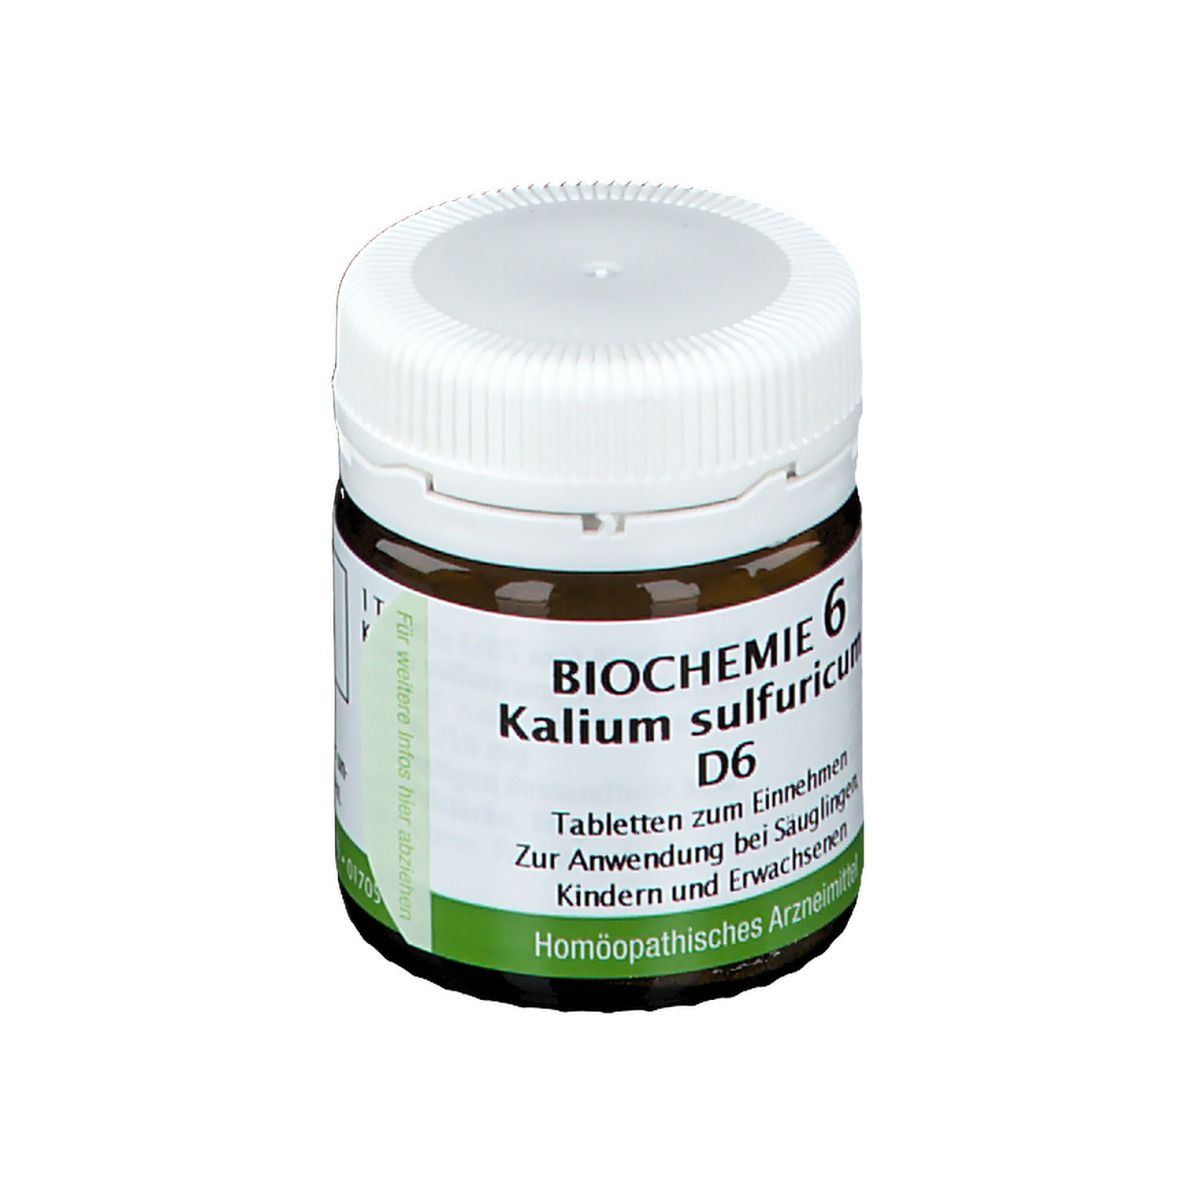 Bombastus Biochemie 6 Kalium sulfuricum D 6 Tabletten